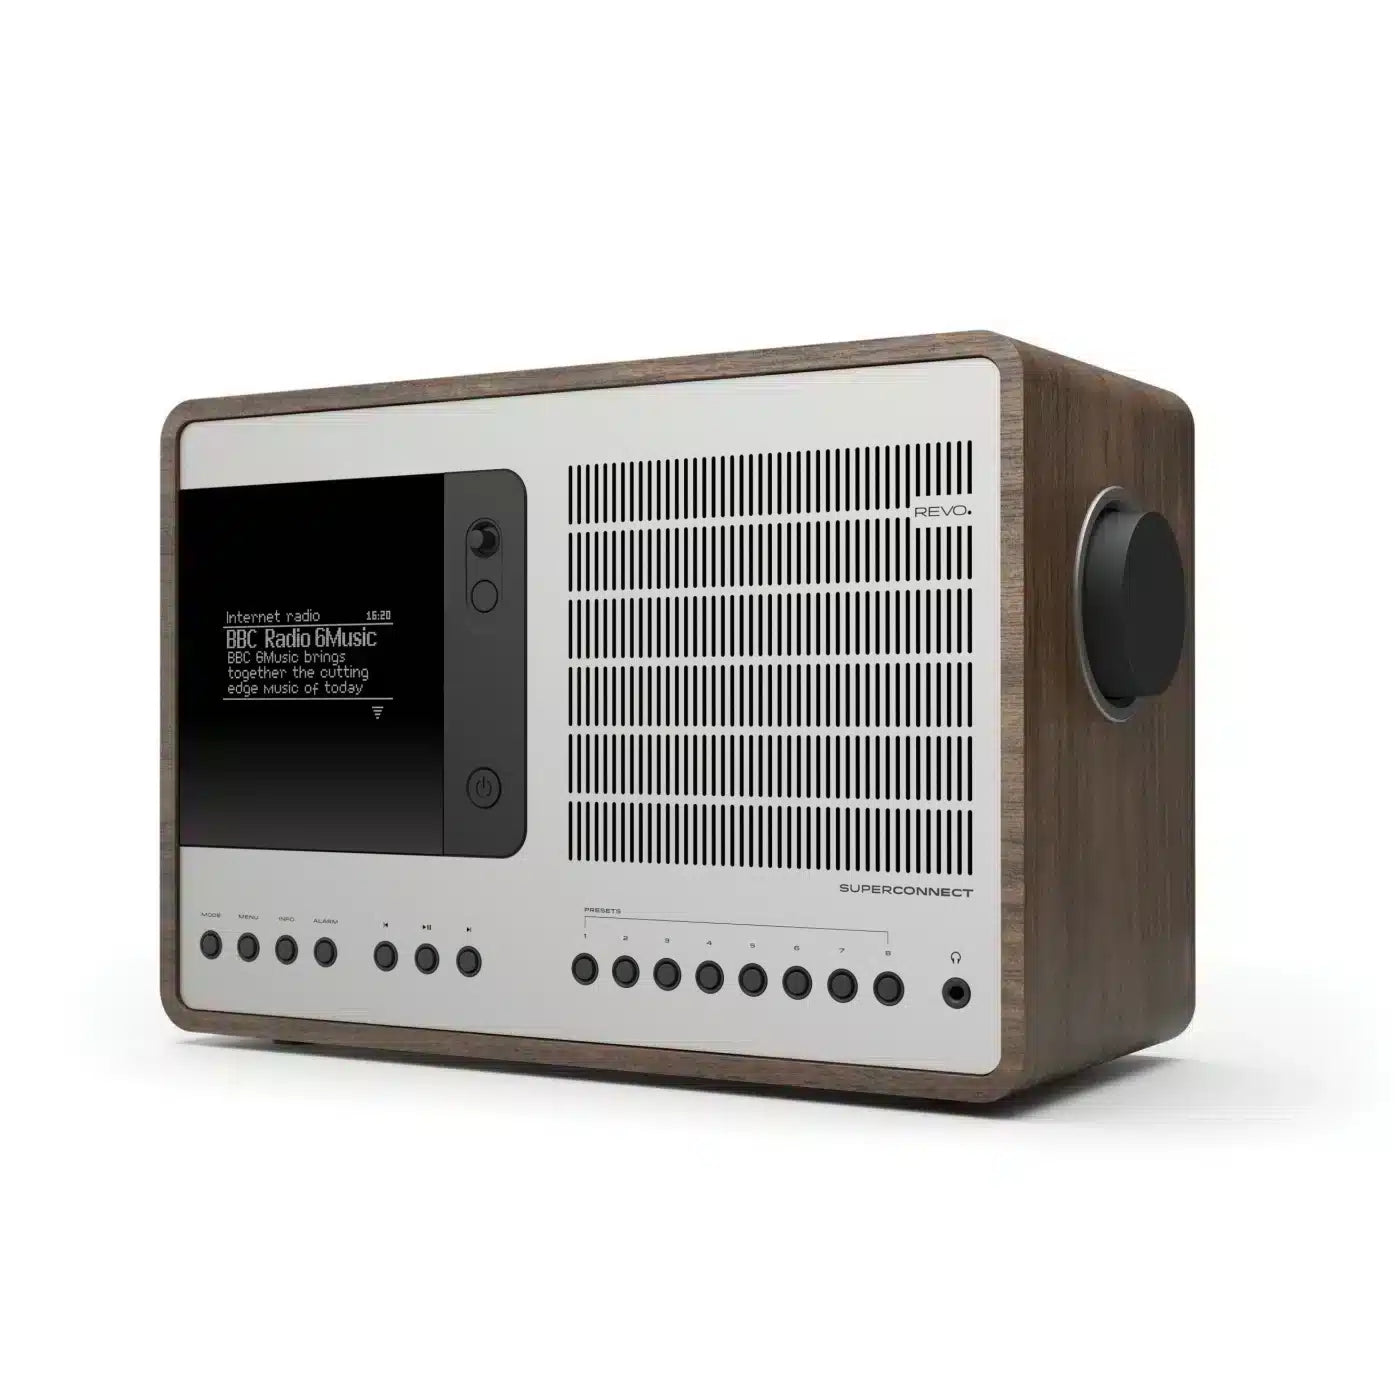 REVO SuperConnect DAB+ FM Digital Radio with Bluetooth Walnut & Silver 1427